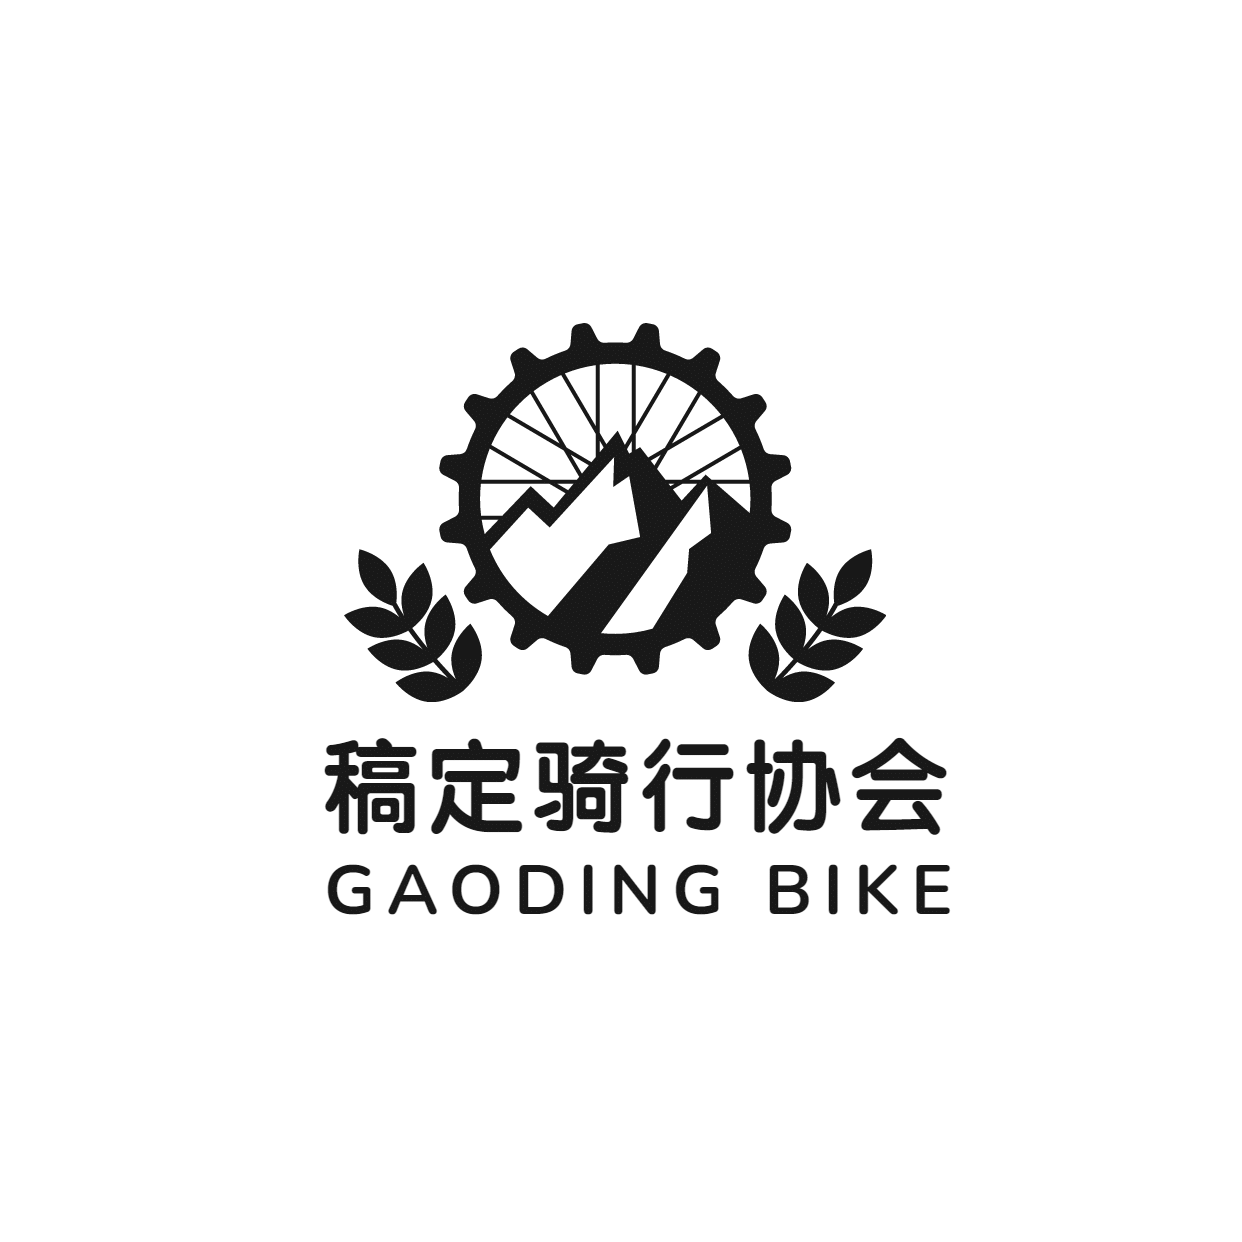 旅游骑行协会绿色出行简约宣传logo头像预览效果